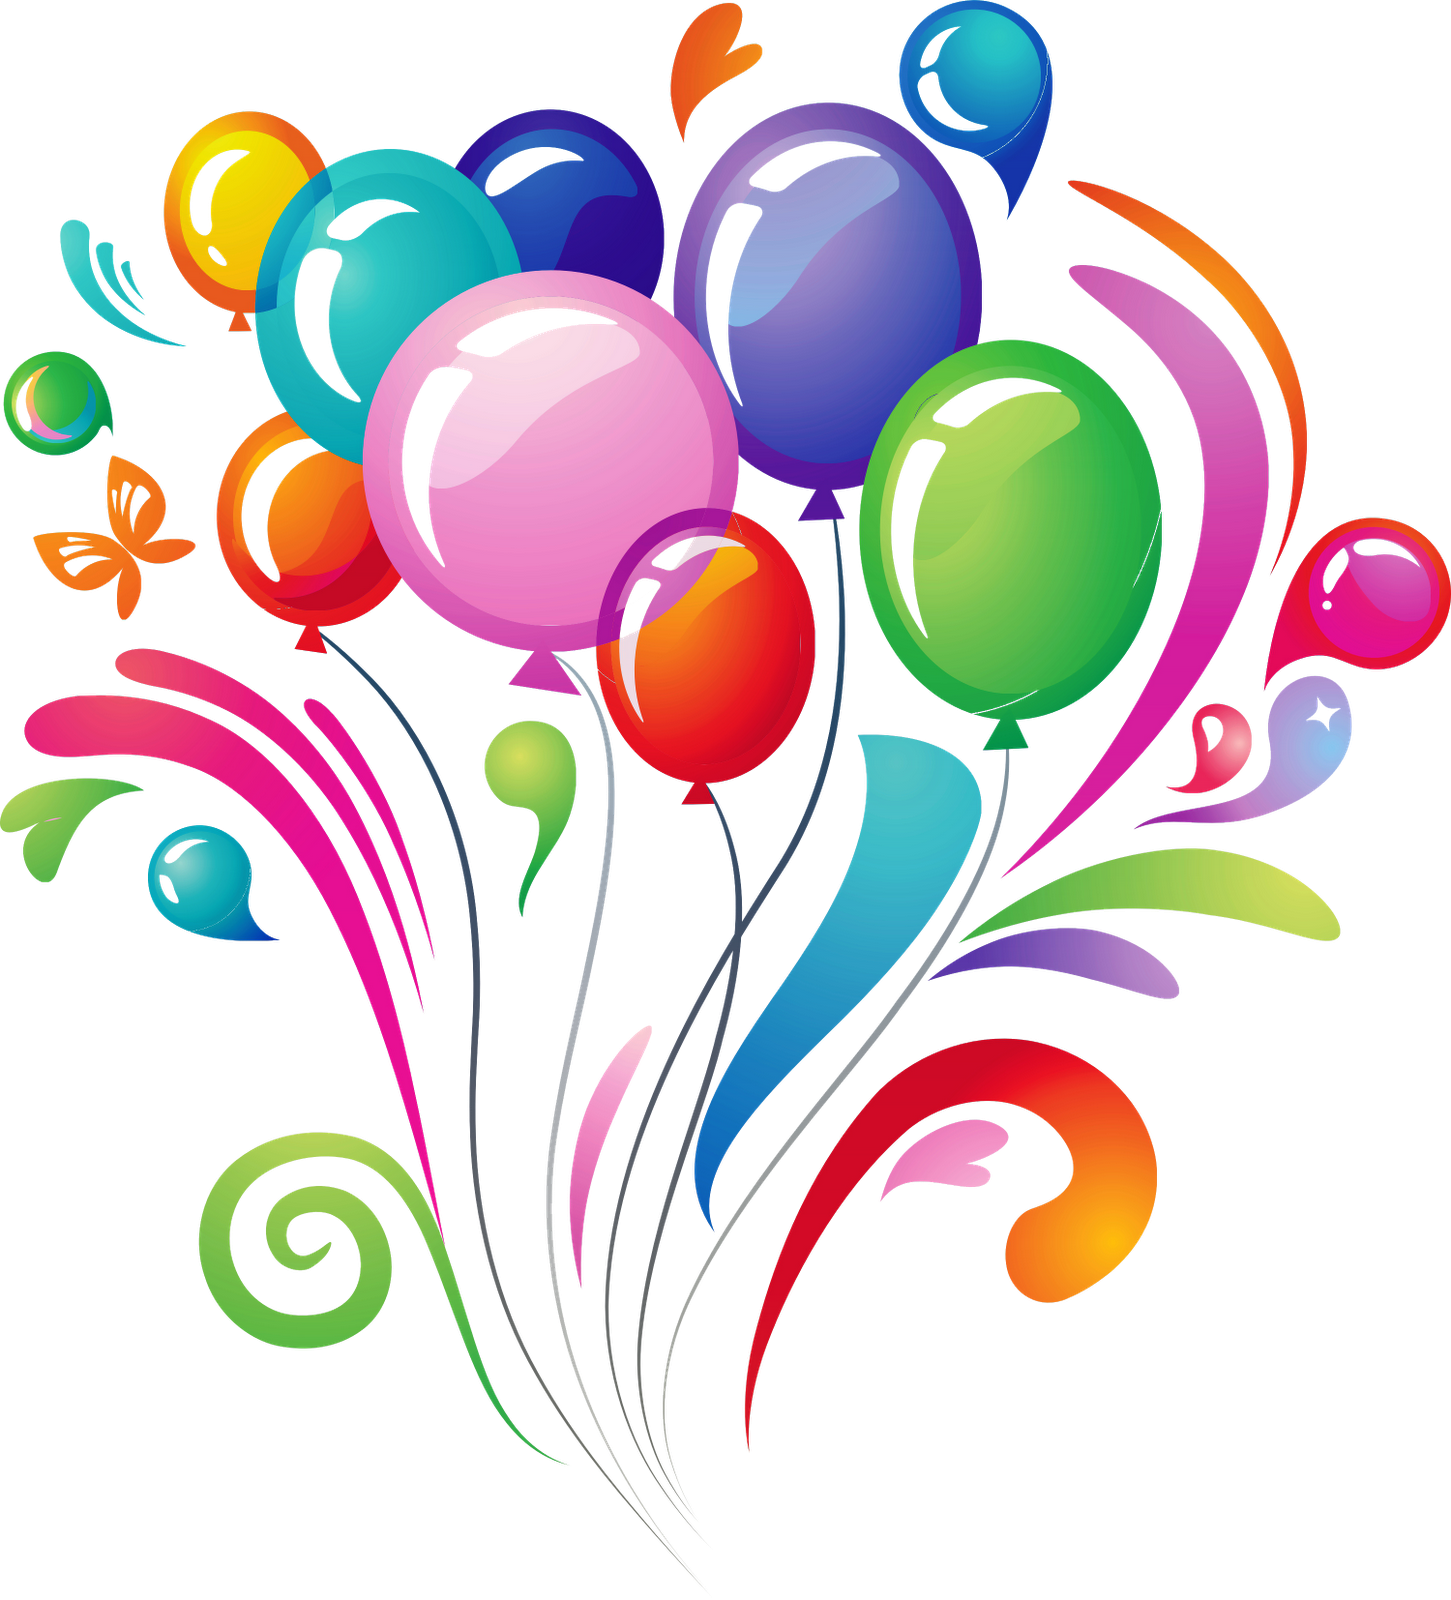 clip art balloons congratulations - photo #50